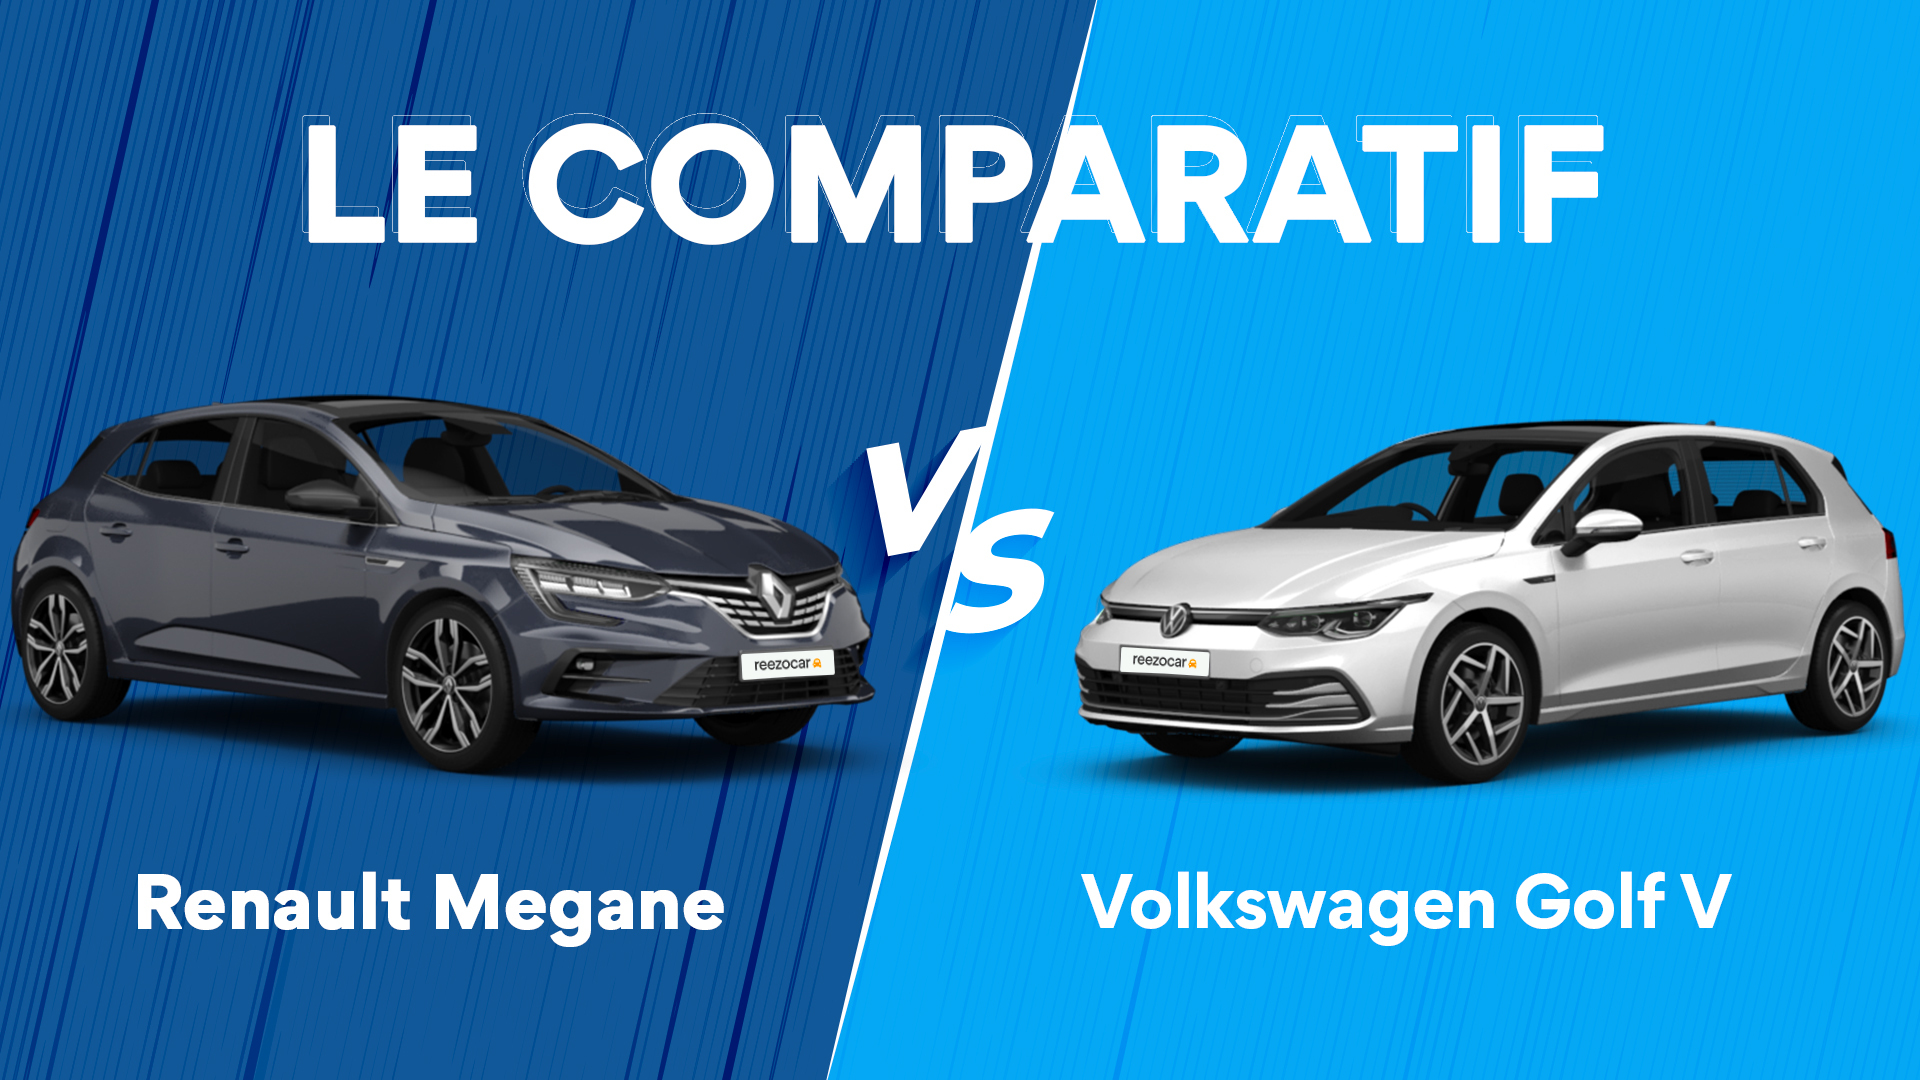 Renault Megane E-Tech Electric – Volkswagen ID.3 : compactes de la nouvelle ère